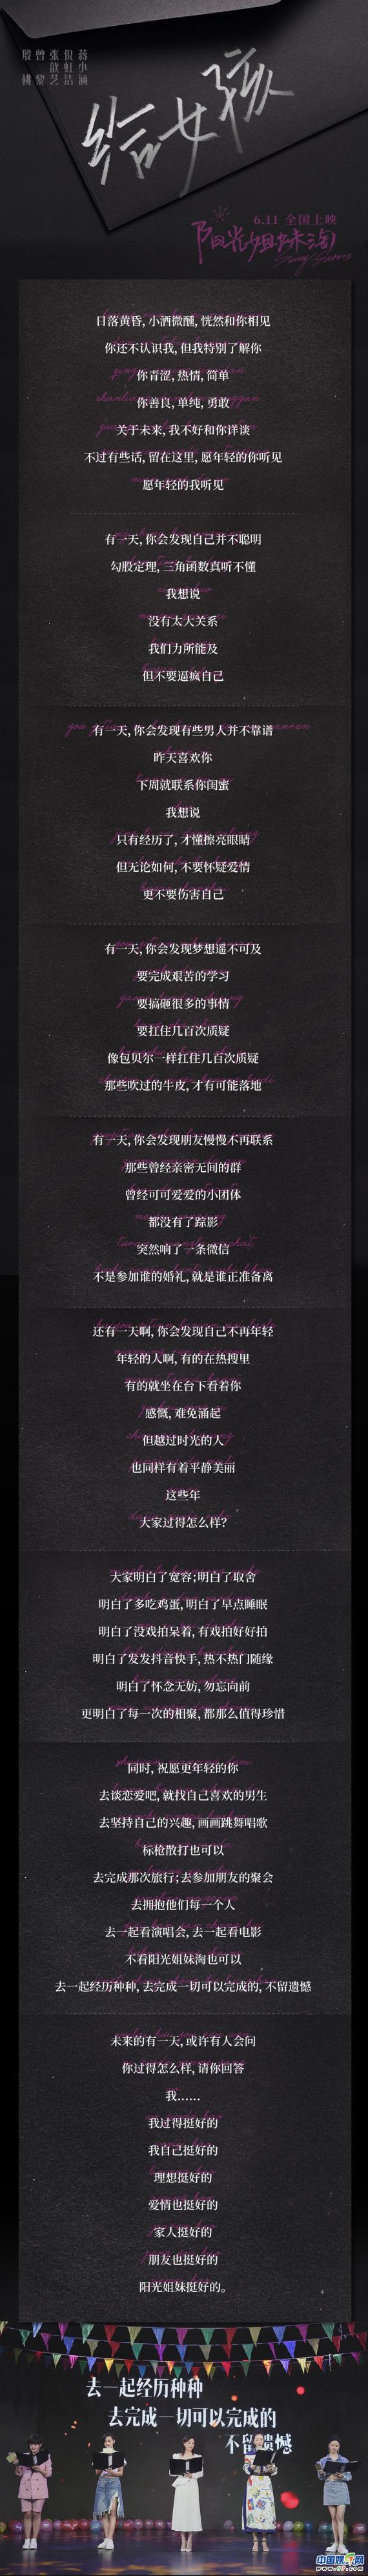 《阳光姐妹淘》发布“给女孩”朗诵 6月3日到6月6日超前点映